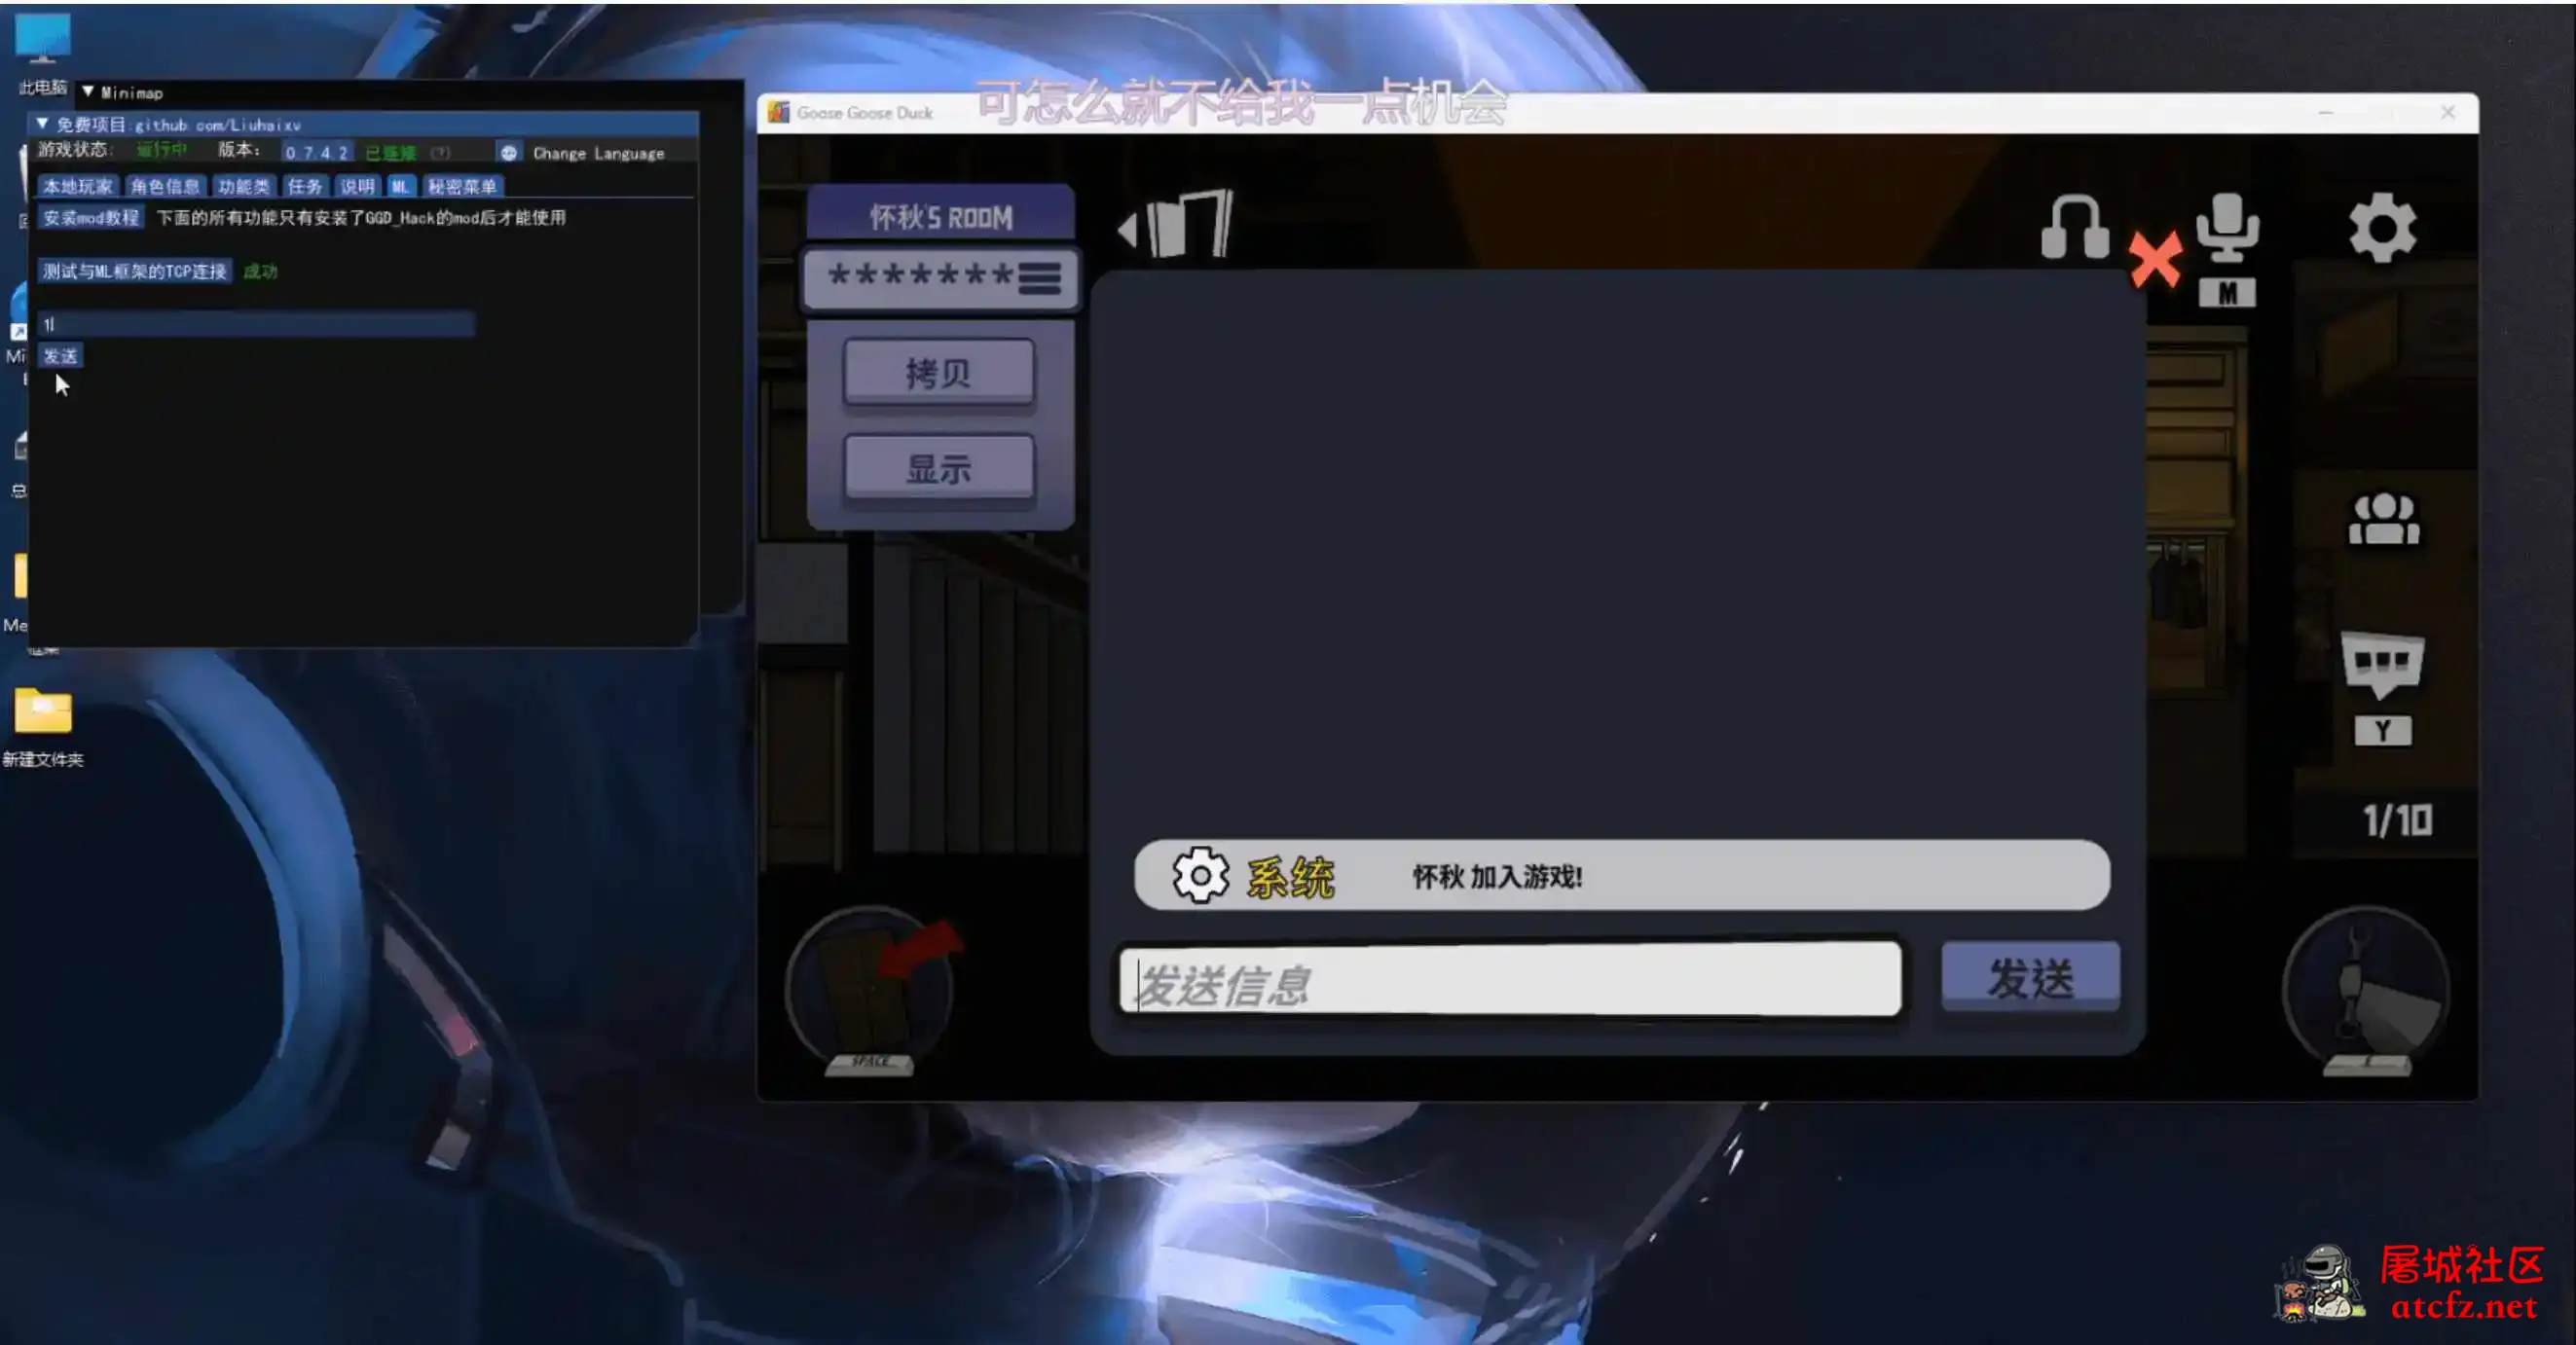 鹅鸭杀Minimp显玩家传送无冷却穿墙多功能辅助v1.5.1 屠城辅助网www.tcfz1.com5499